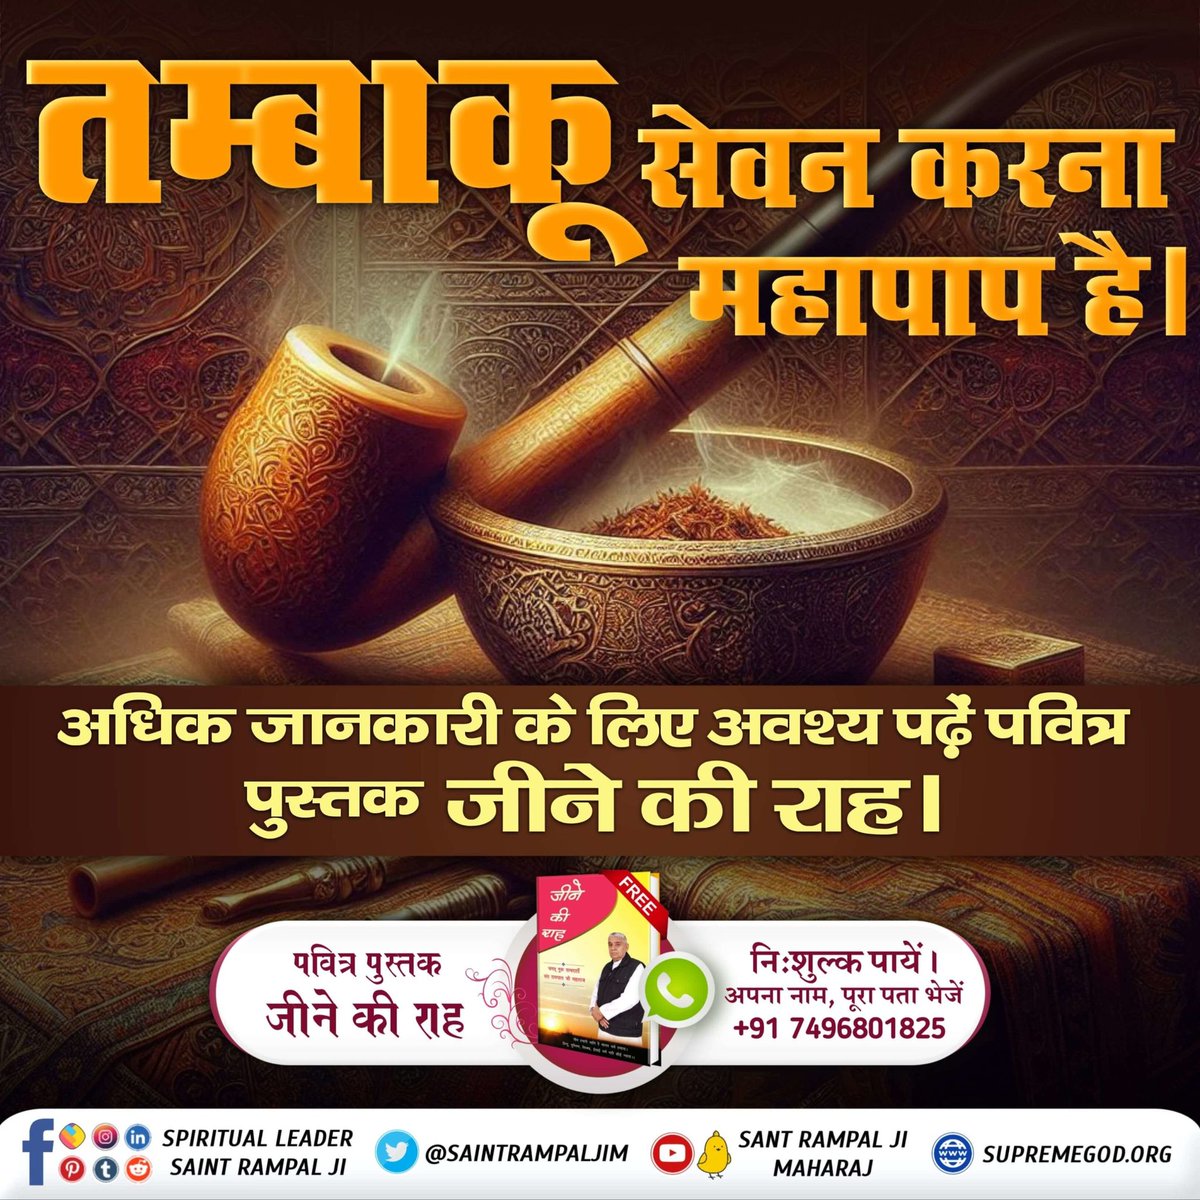 #सबपापोंमें_प्रमुख_पाप_तंबाखू तम्बाकू सेवन करना महापाप है। अधिक जानकारी के लिए अवश्य पढ़ें पवित्र पुस्तक जीने की राह । Sant Rampal Ji Maharaj #GodMorningFriday